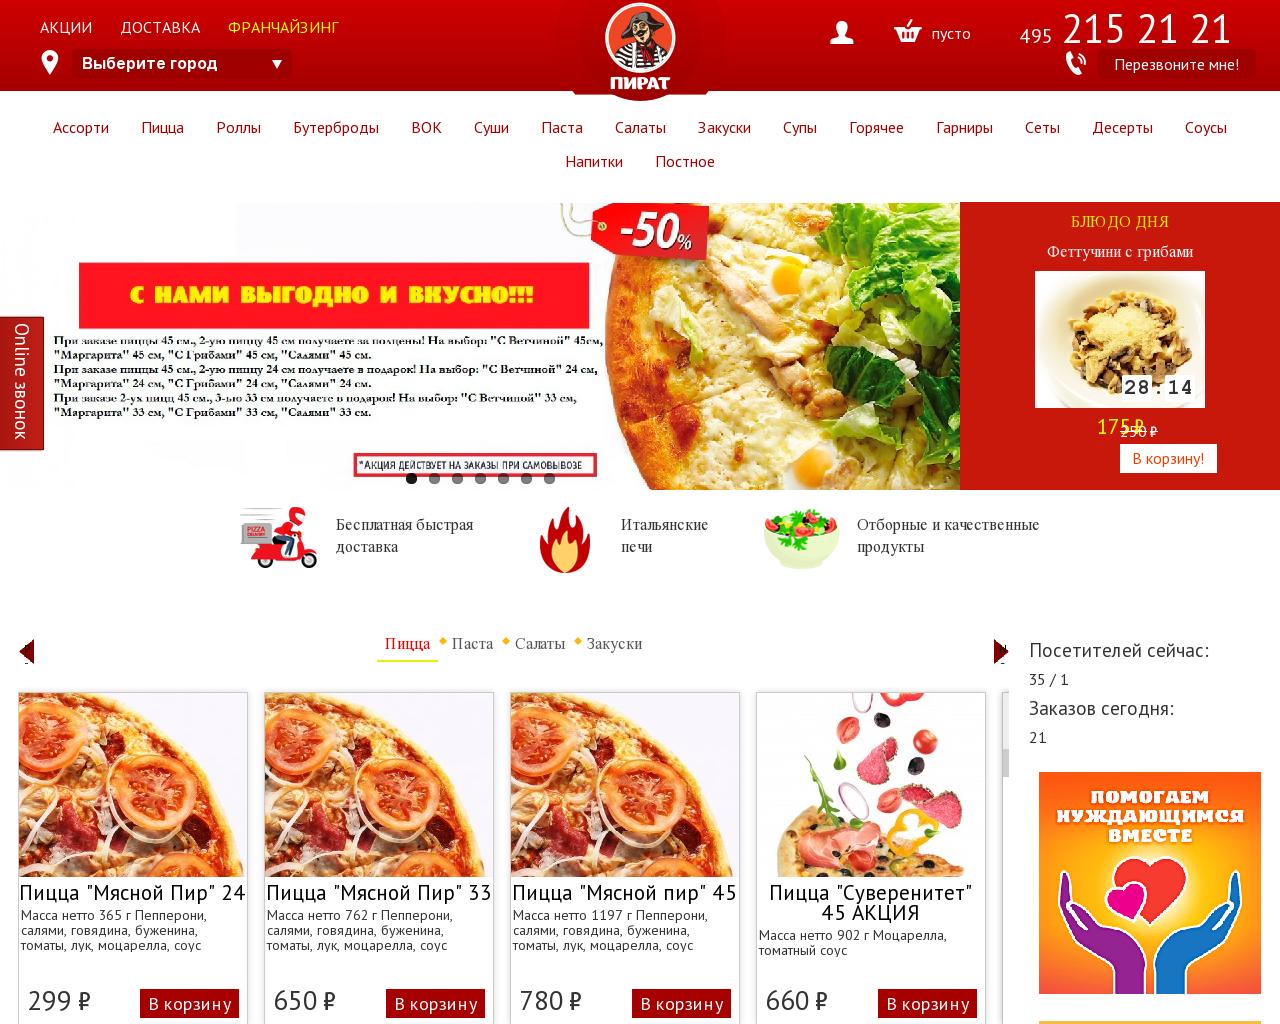 Изображение сайта pizzapirat.ru в разрешении 1280x1024